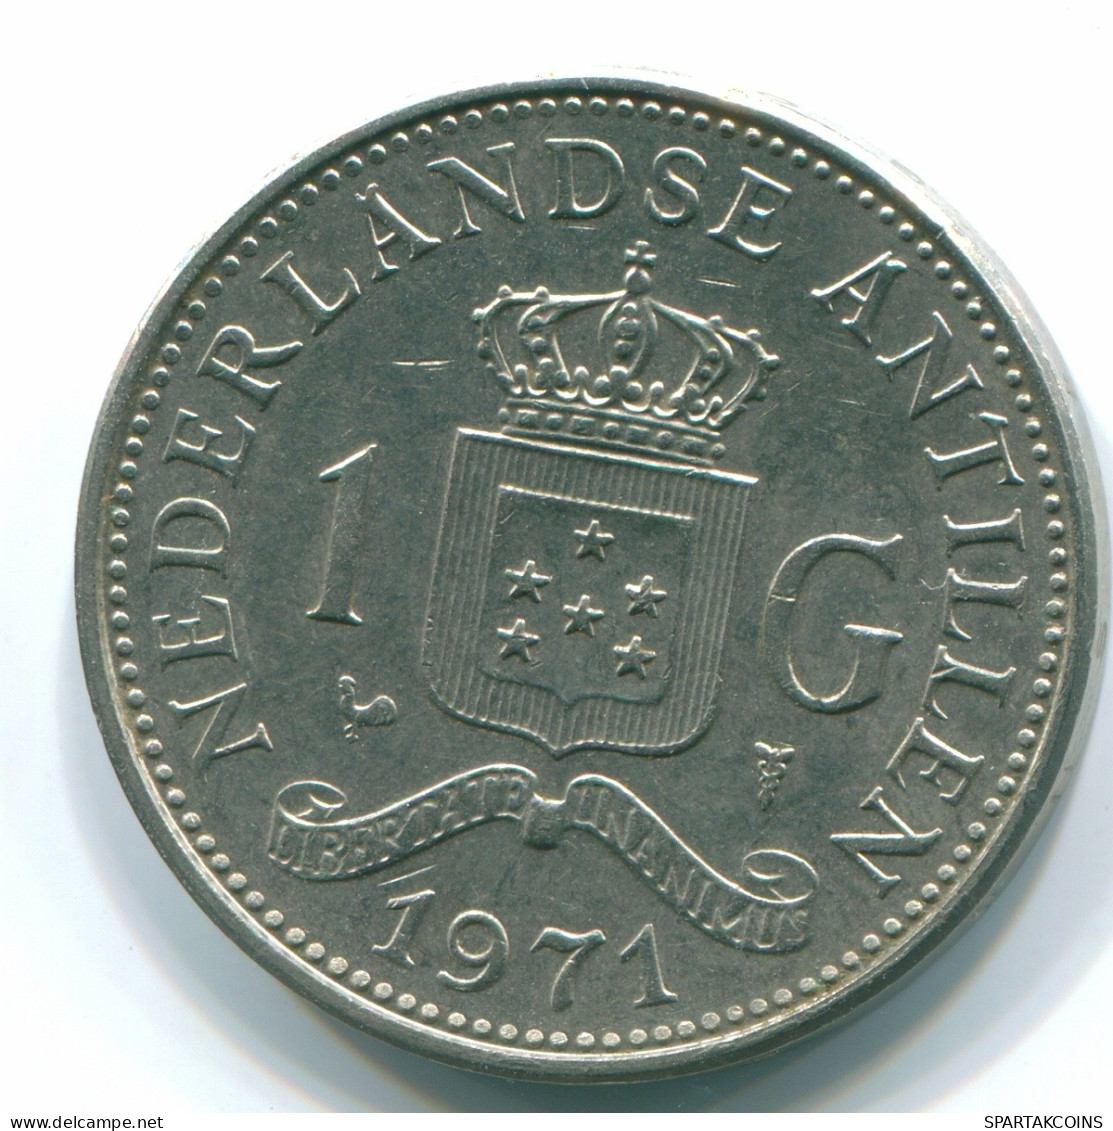 1 GULDEN 1971 NIEDERLÄNDISCHE ANTILLEN Nickel Koloniale Münze #S11981.D.A - Netherlands Antilles